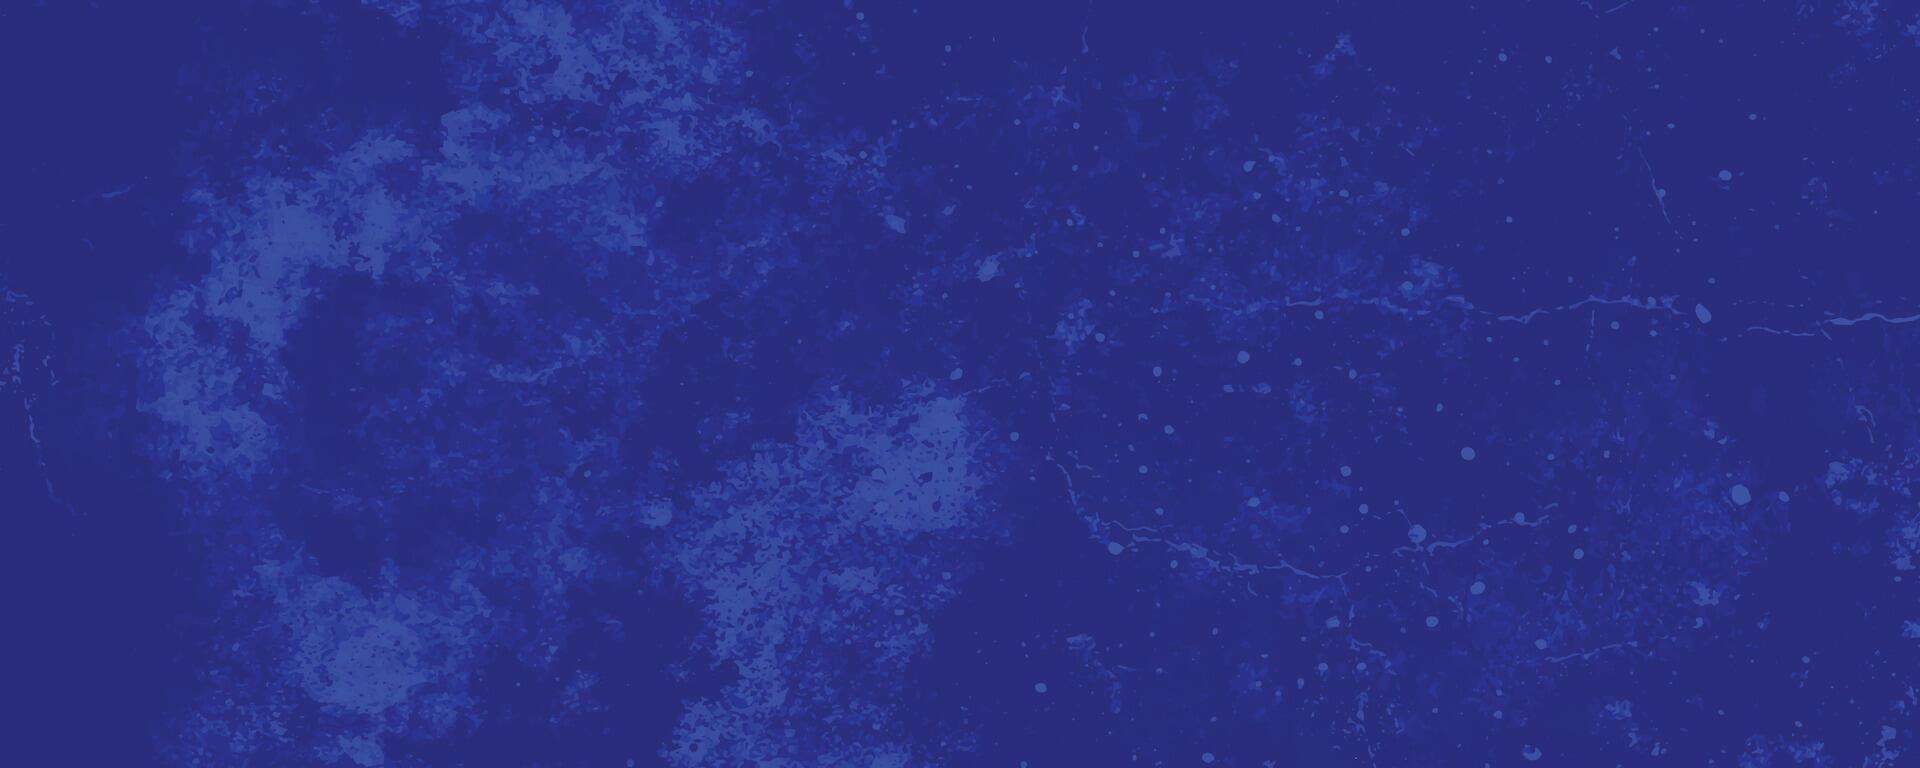 kratzen Grunge städtisch Hintergrund, betrübt Blau Grunge Textur Hintergrund, abstrakt Hintergrund vektor